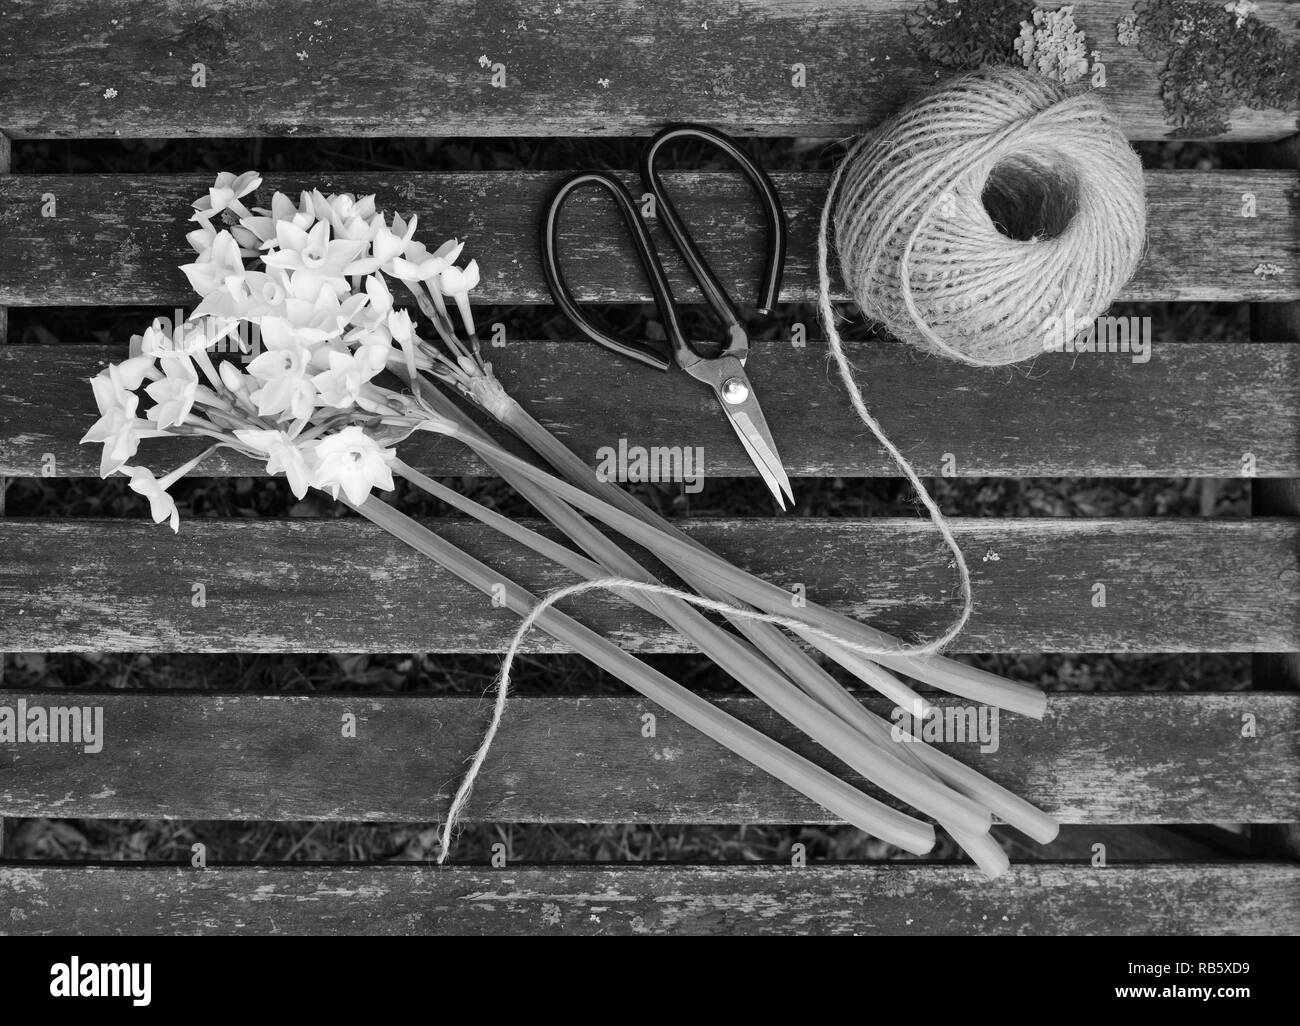 Ball der Garn- und Gartenarbeit Schere mit ein Bündel weißer Narzissen Blumen auf einem holzstäbchen Sitzbank - monochrom Verarbeitung Stockfoto